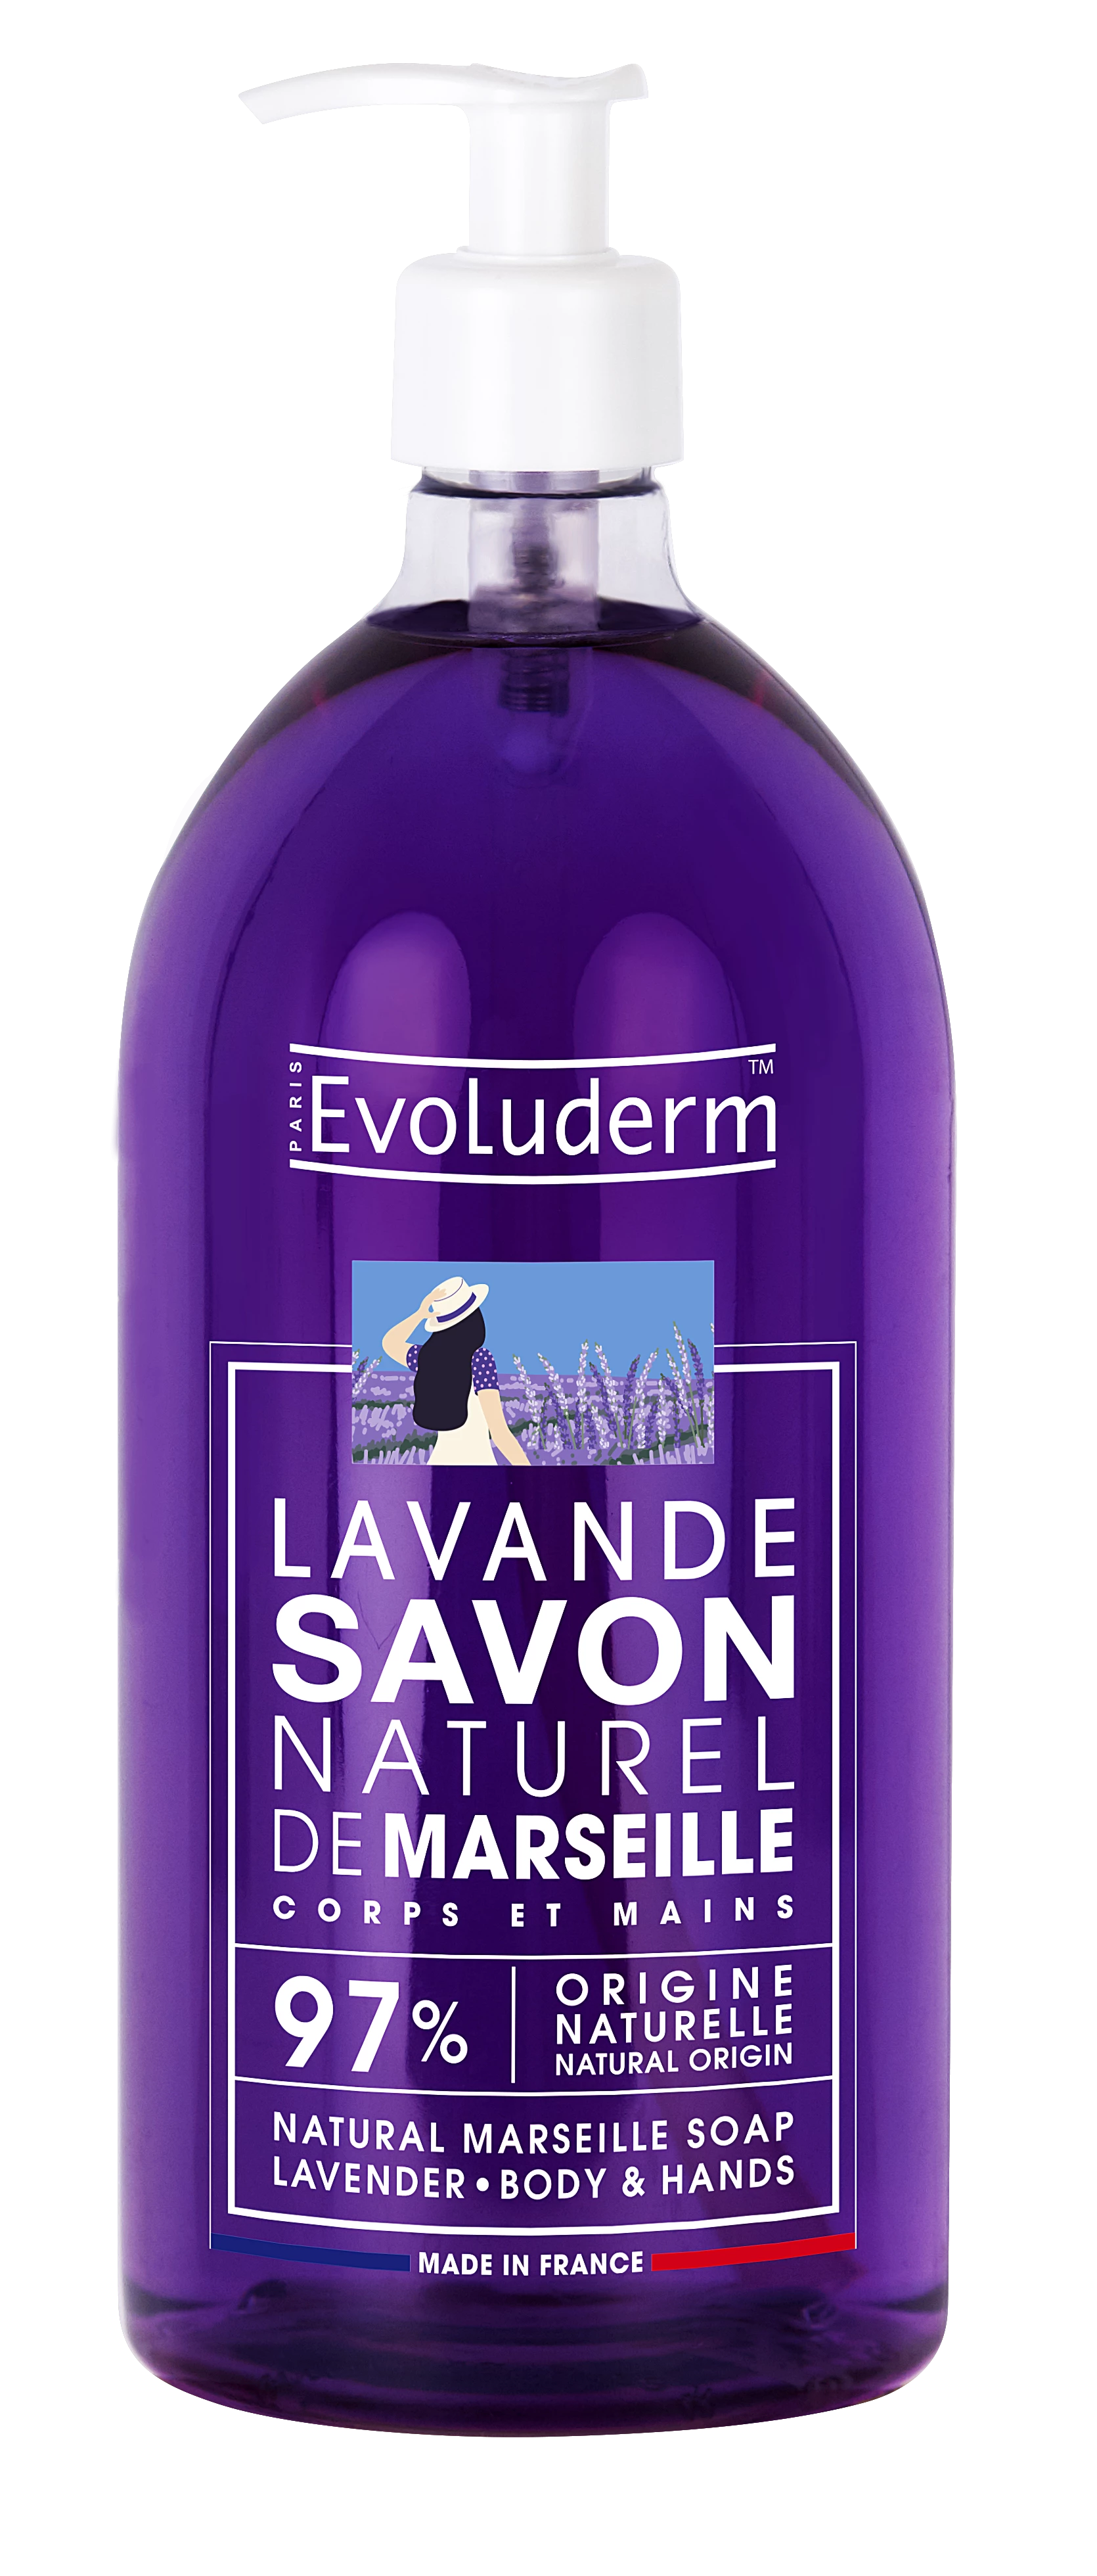 Марсельское натуральное жидкое лавандовое мыло, 1л - EVOLUDERM